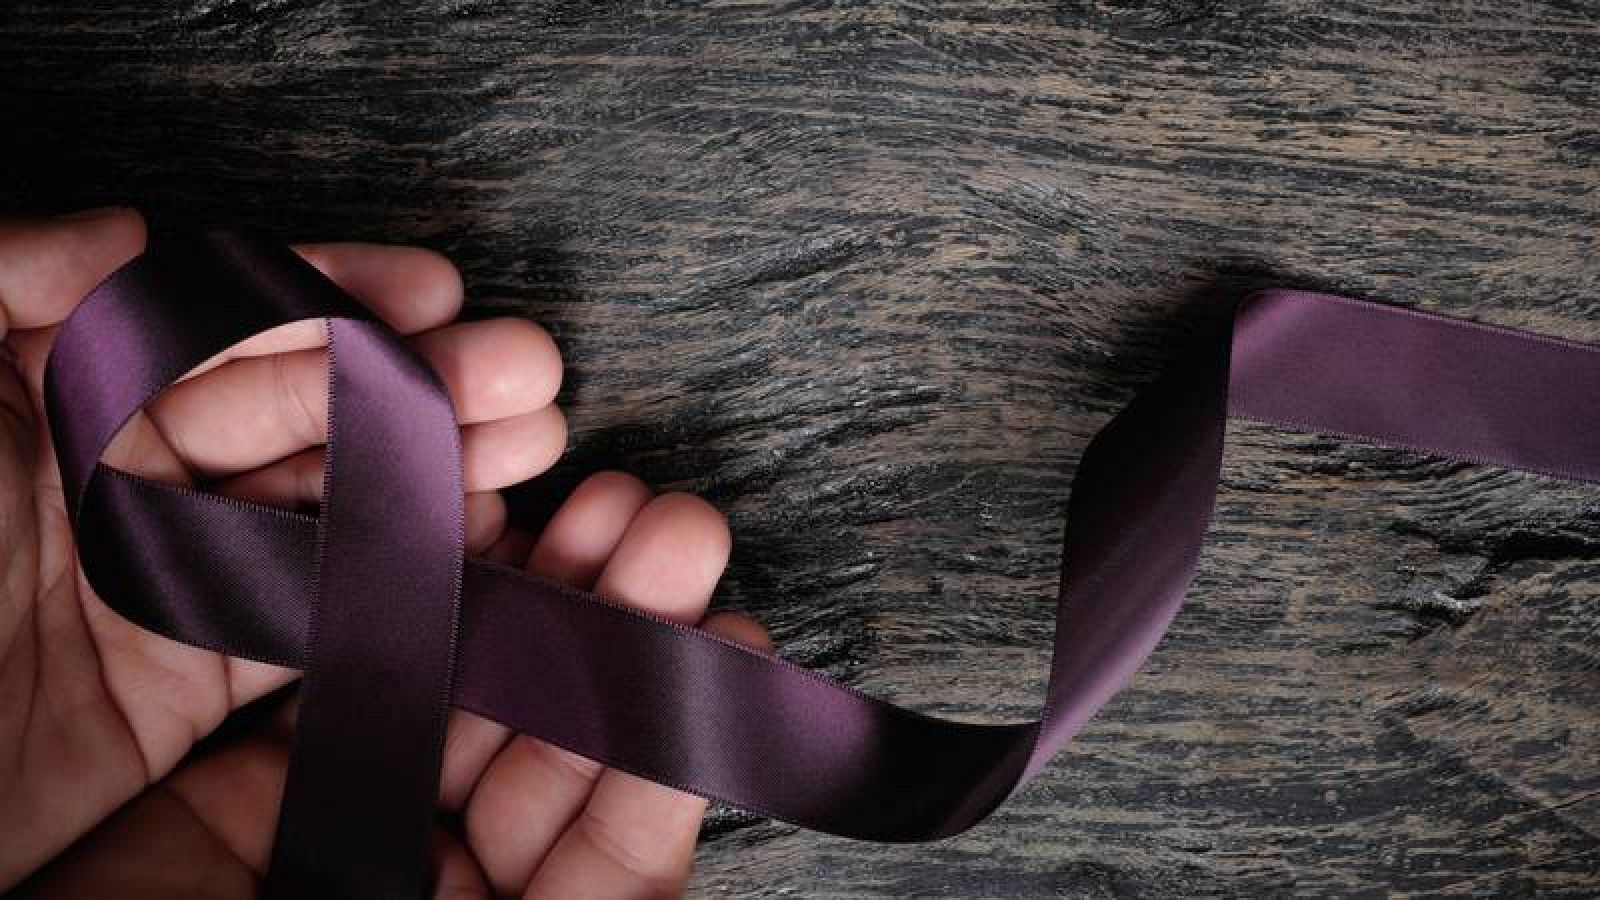 Un lazo violeta simboliza el rechazo de la violencia de género